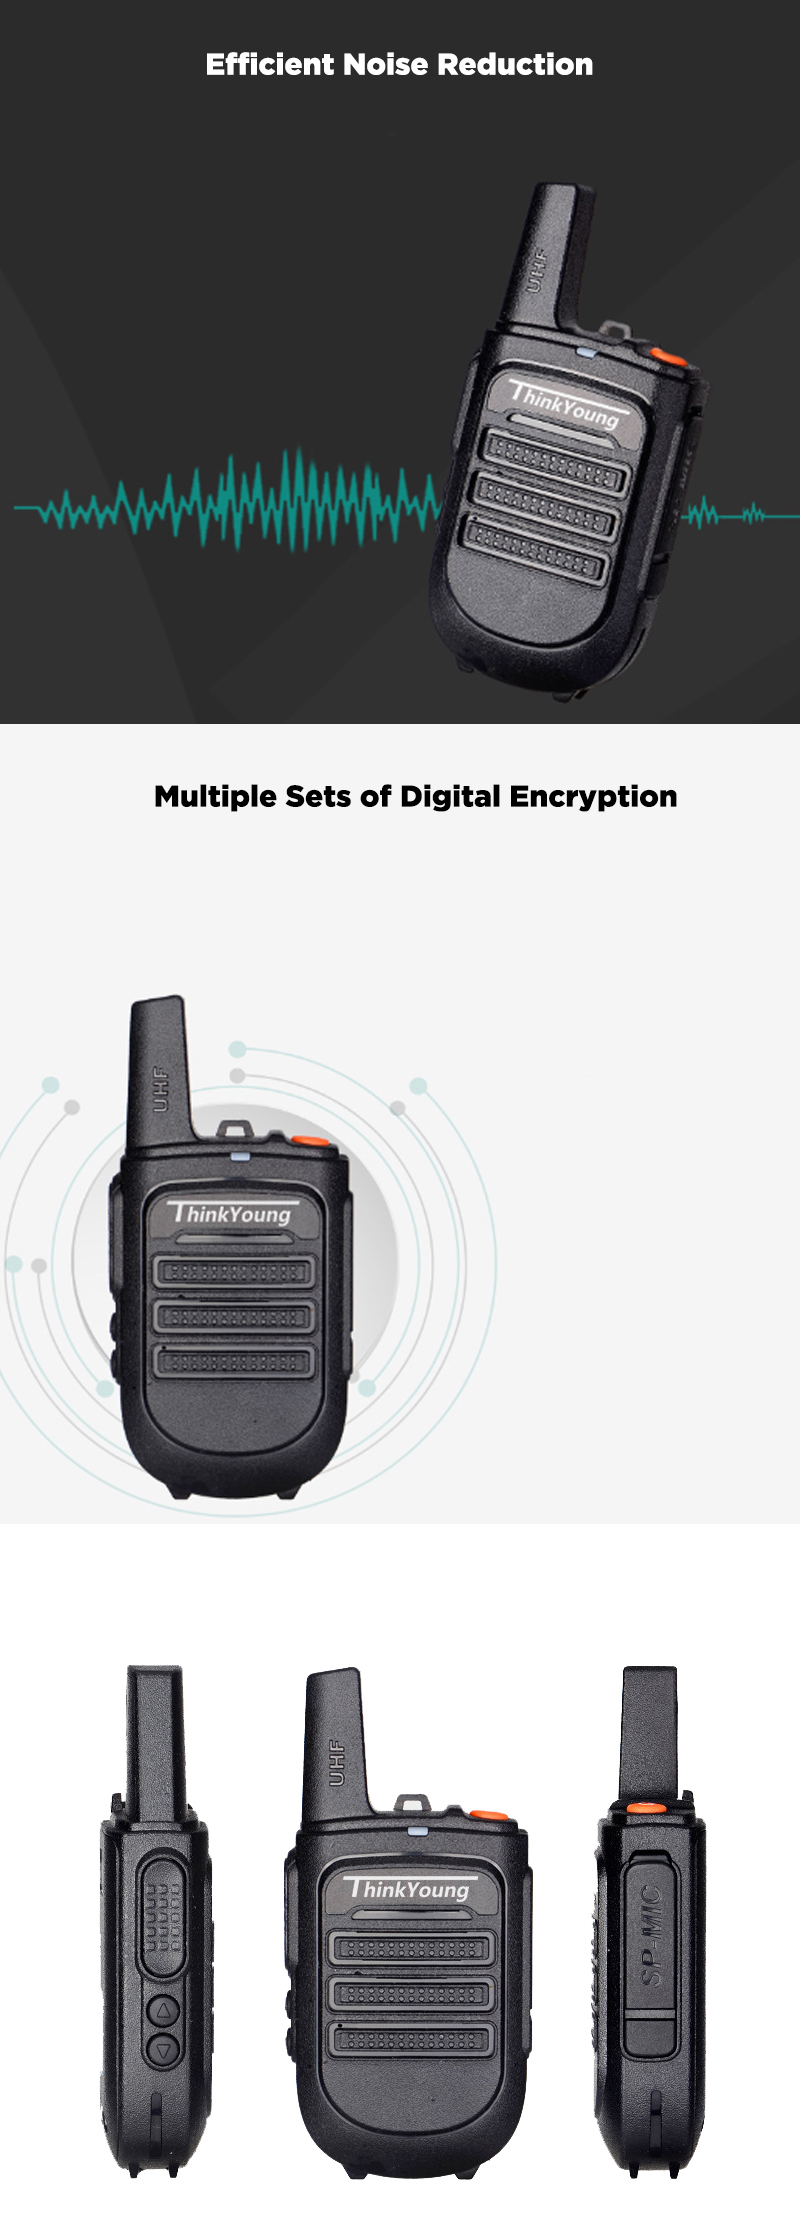 Thinkyoung-828-5W-IP54-Waterproof-Dustproof-Mini-Handheld-Radio-Walkie-Talkie-Interphone-Civilian-In-1617304-2